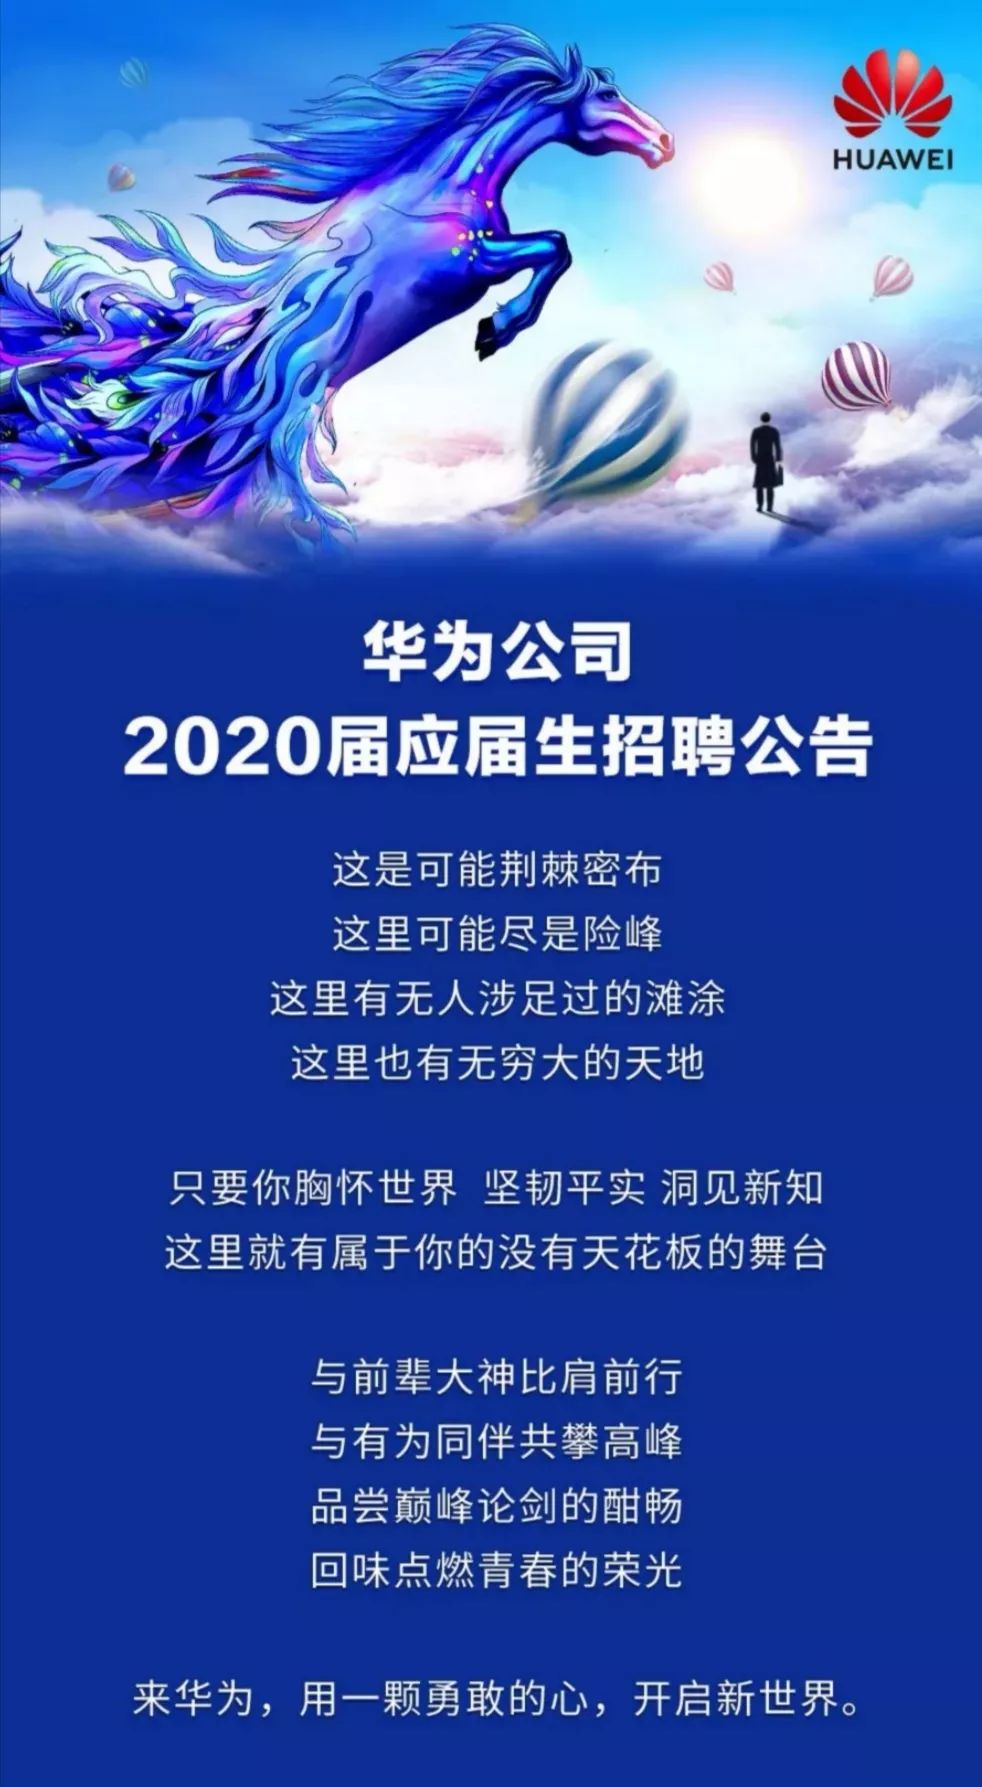 【招聘信息】华为2020届应届生招聘公告